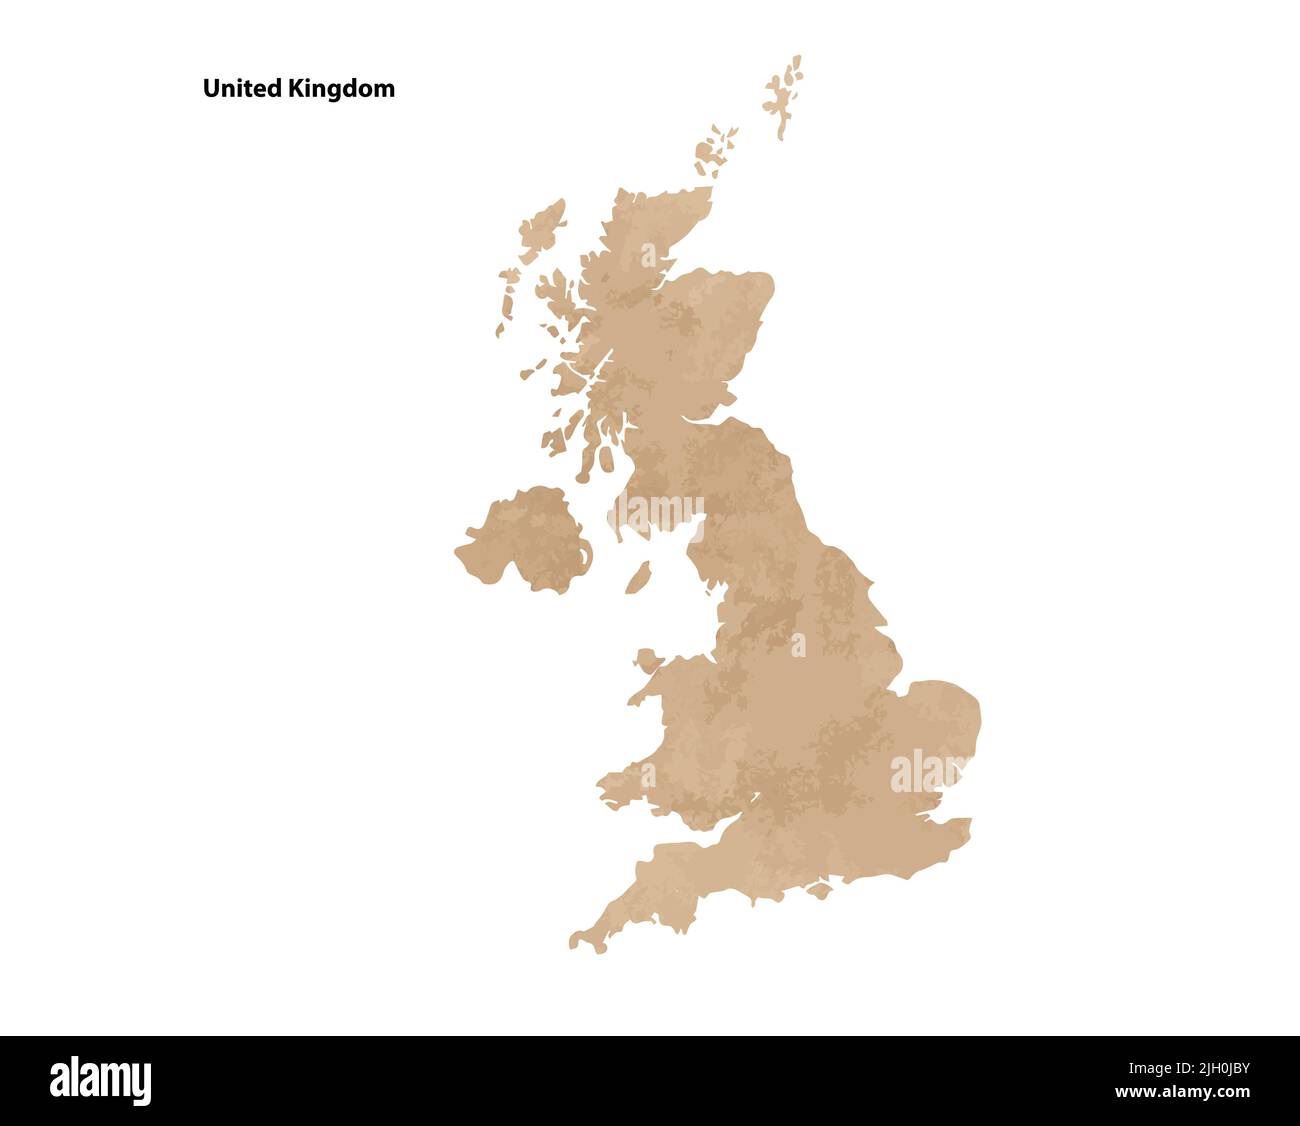 Alte Vintage Papier strukturierte Karte von Großbritannien Land - Vektor-Illustration Stock Vektor